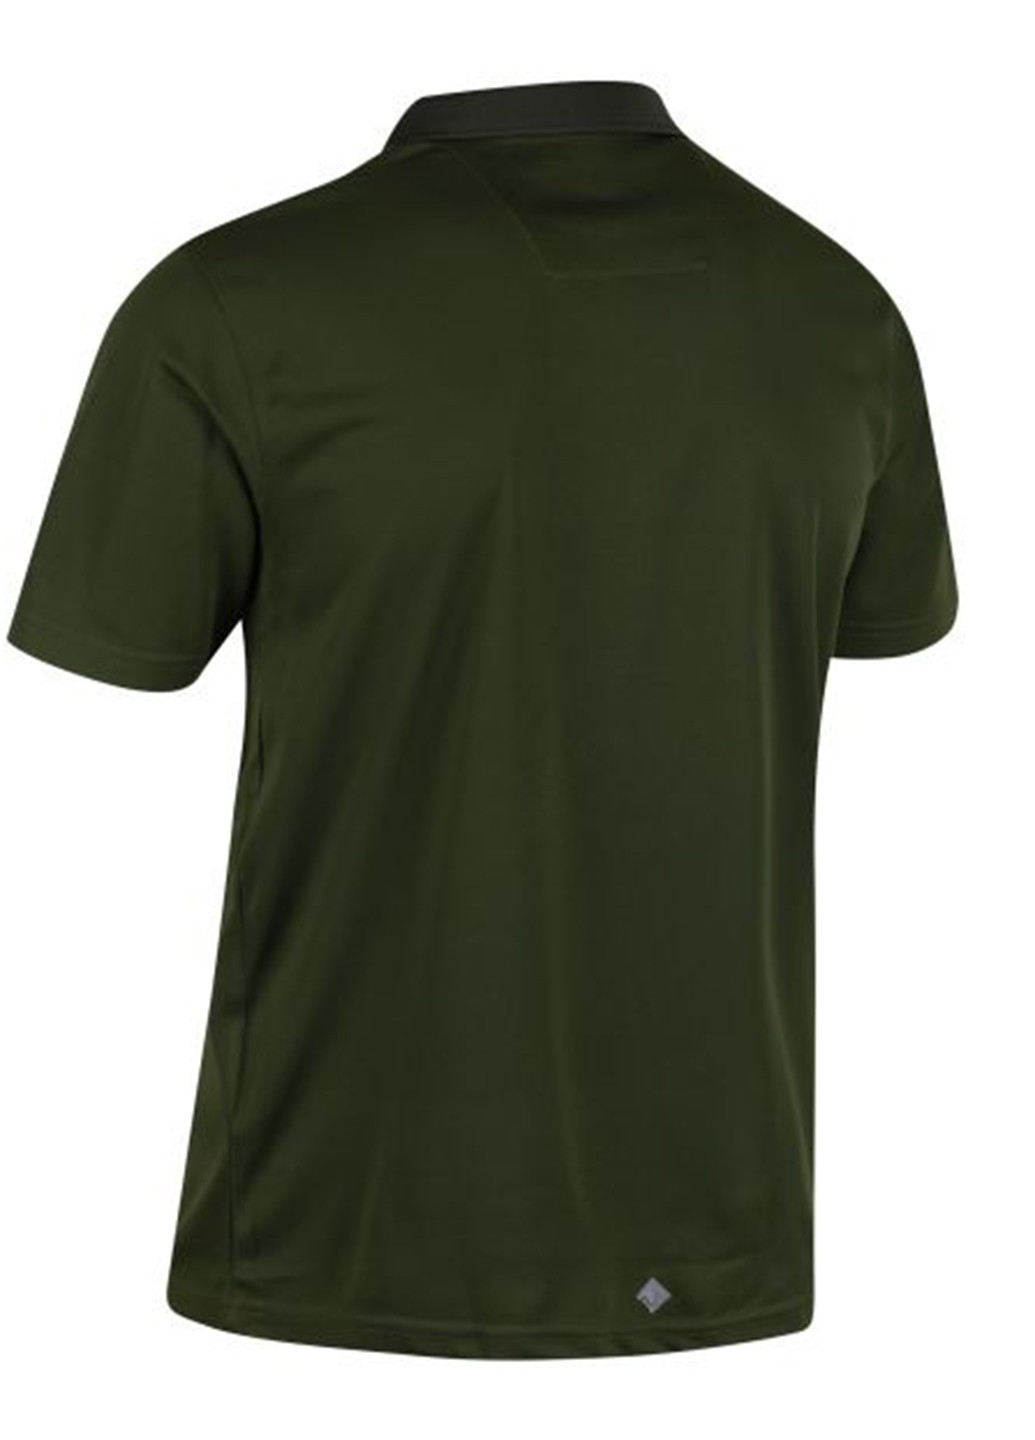 Темно-зеленая футболка-поло для мужчин Regatta с надписью